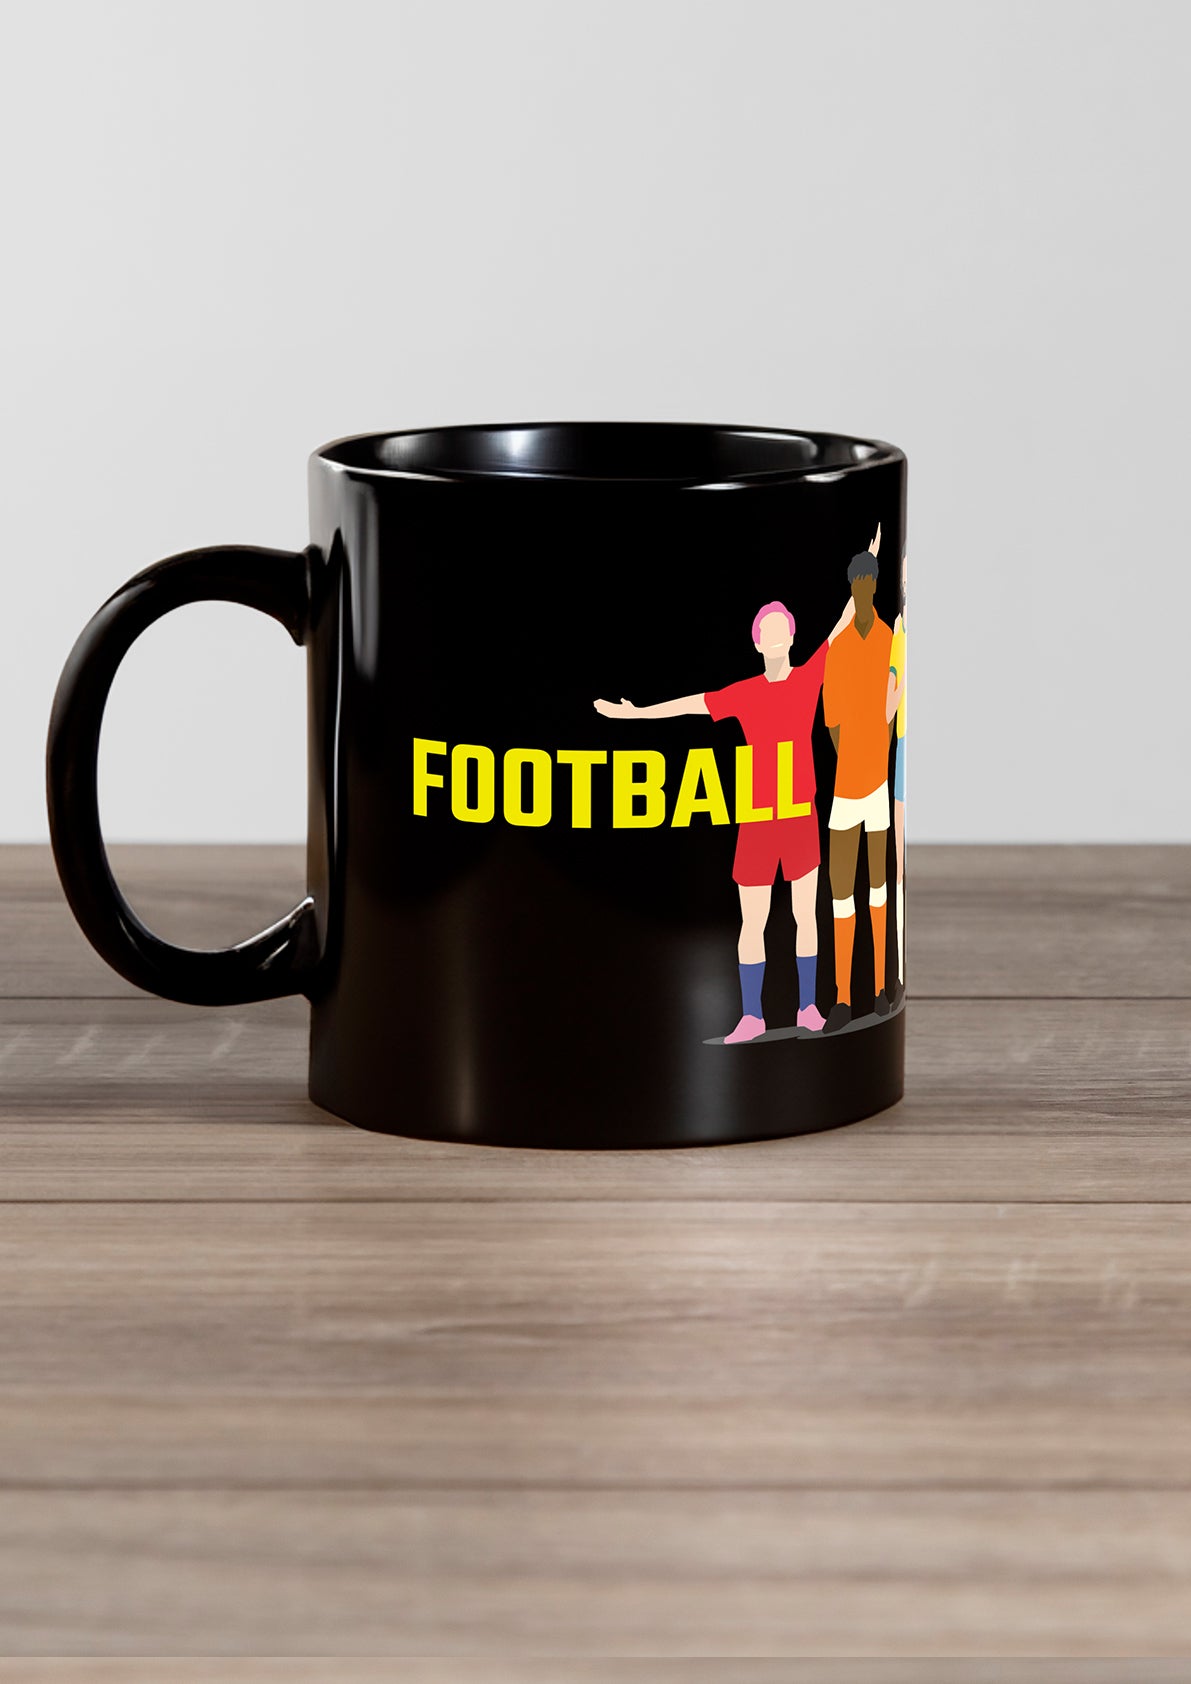 
                  
                    "Football United" mug
                  
                